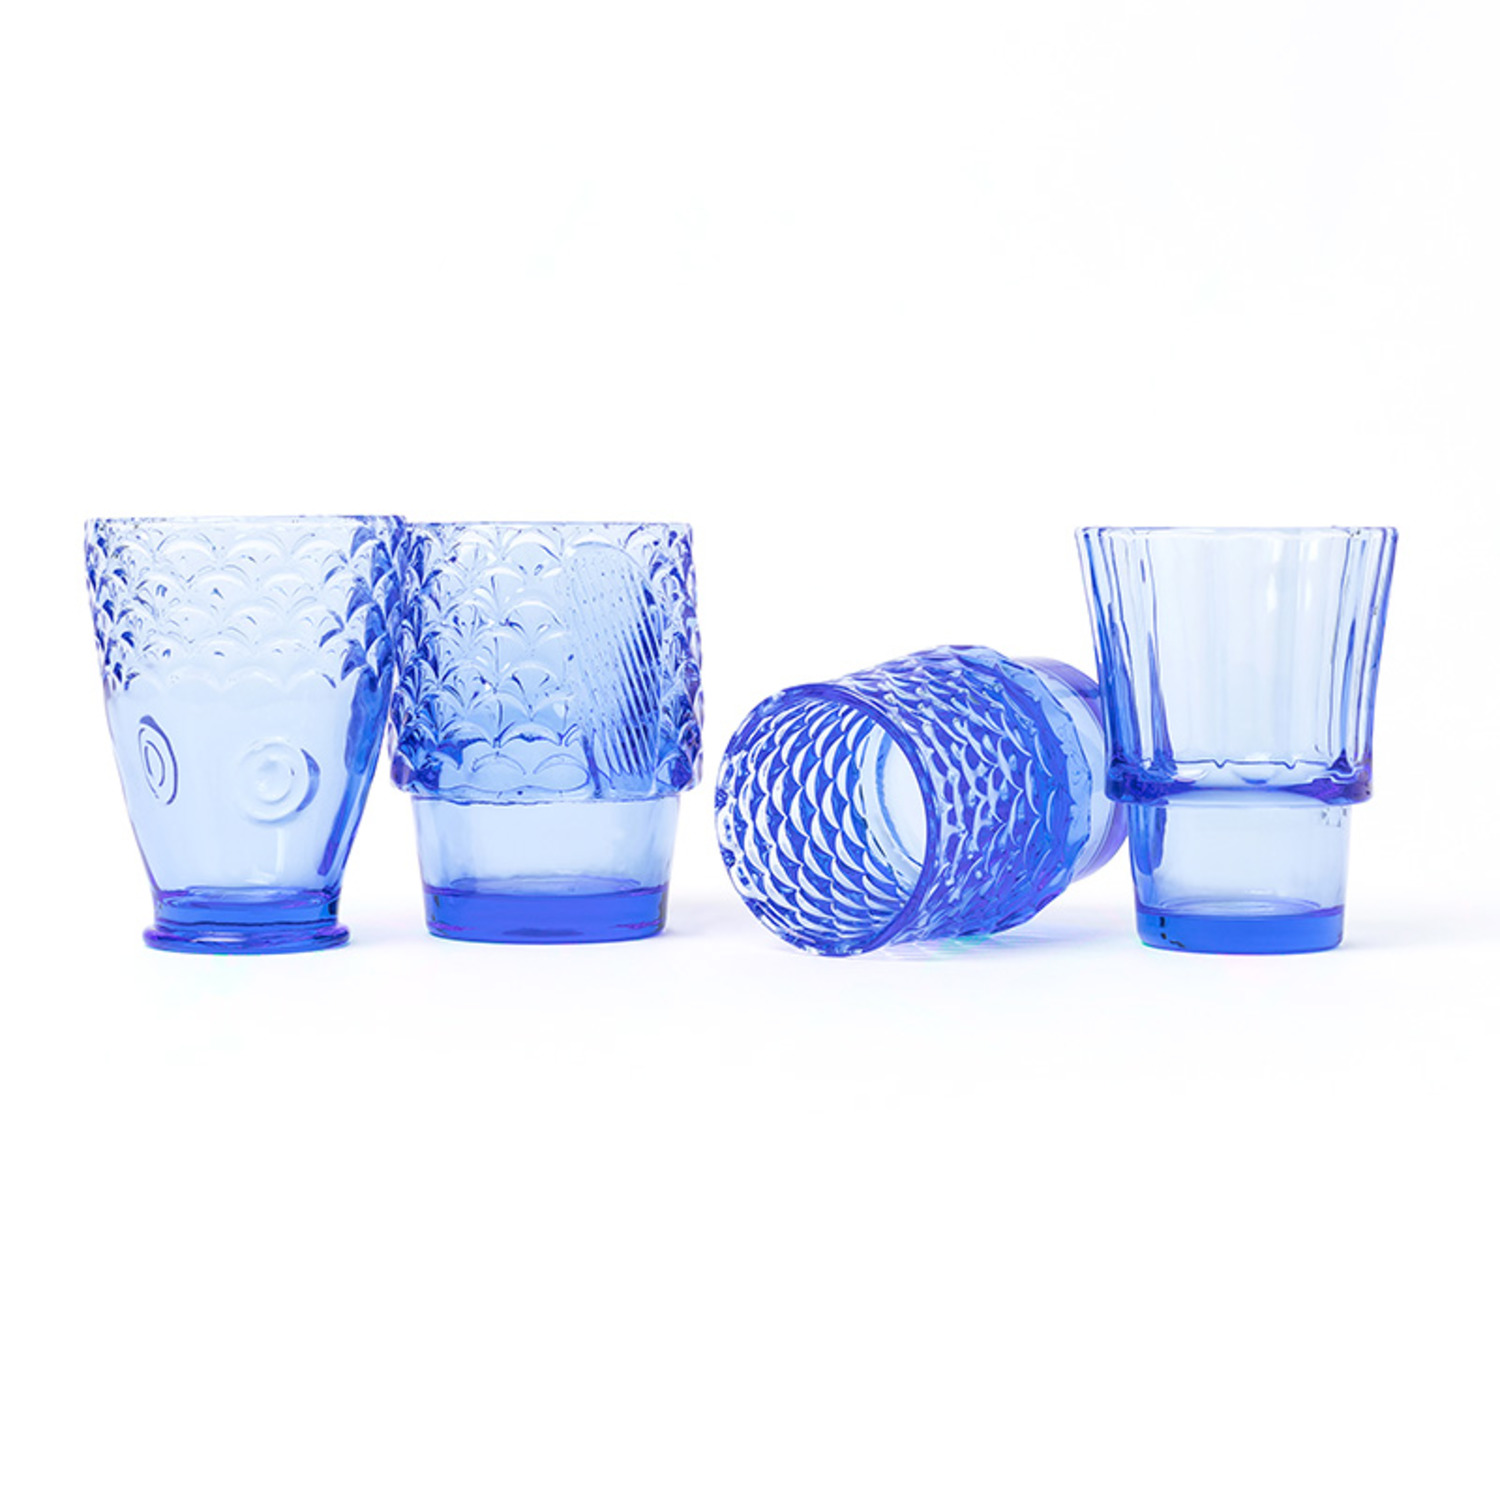 锦鲤透明玻璃水杯堆叠套装-5